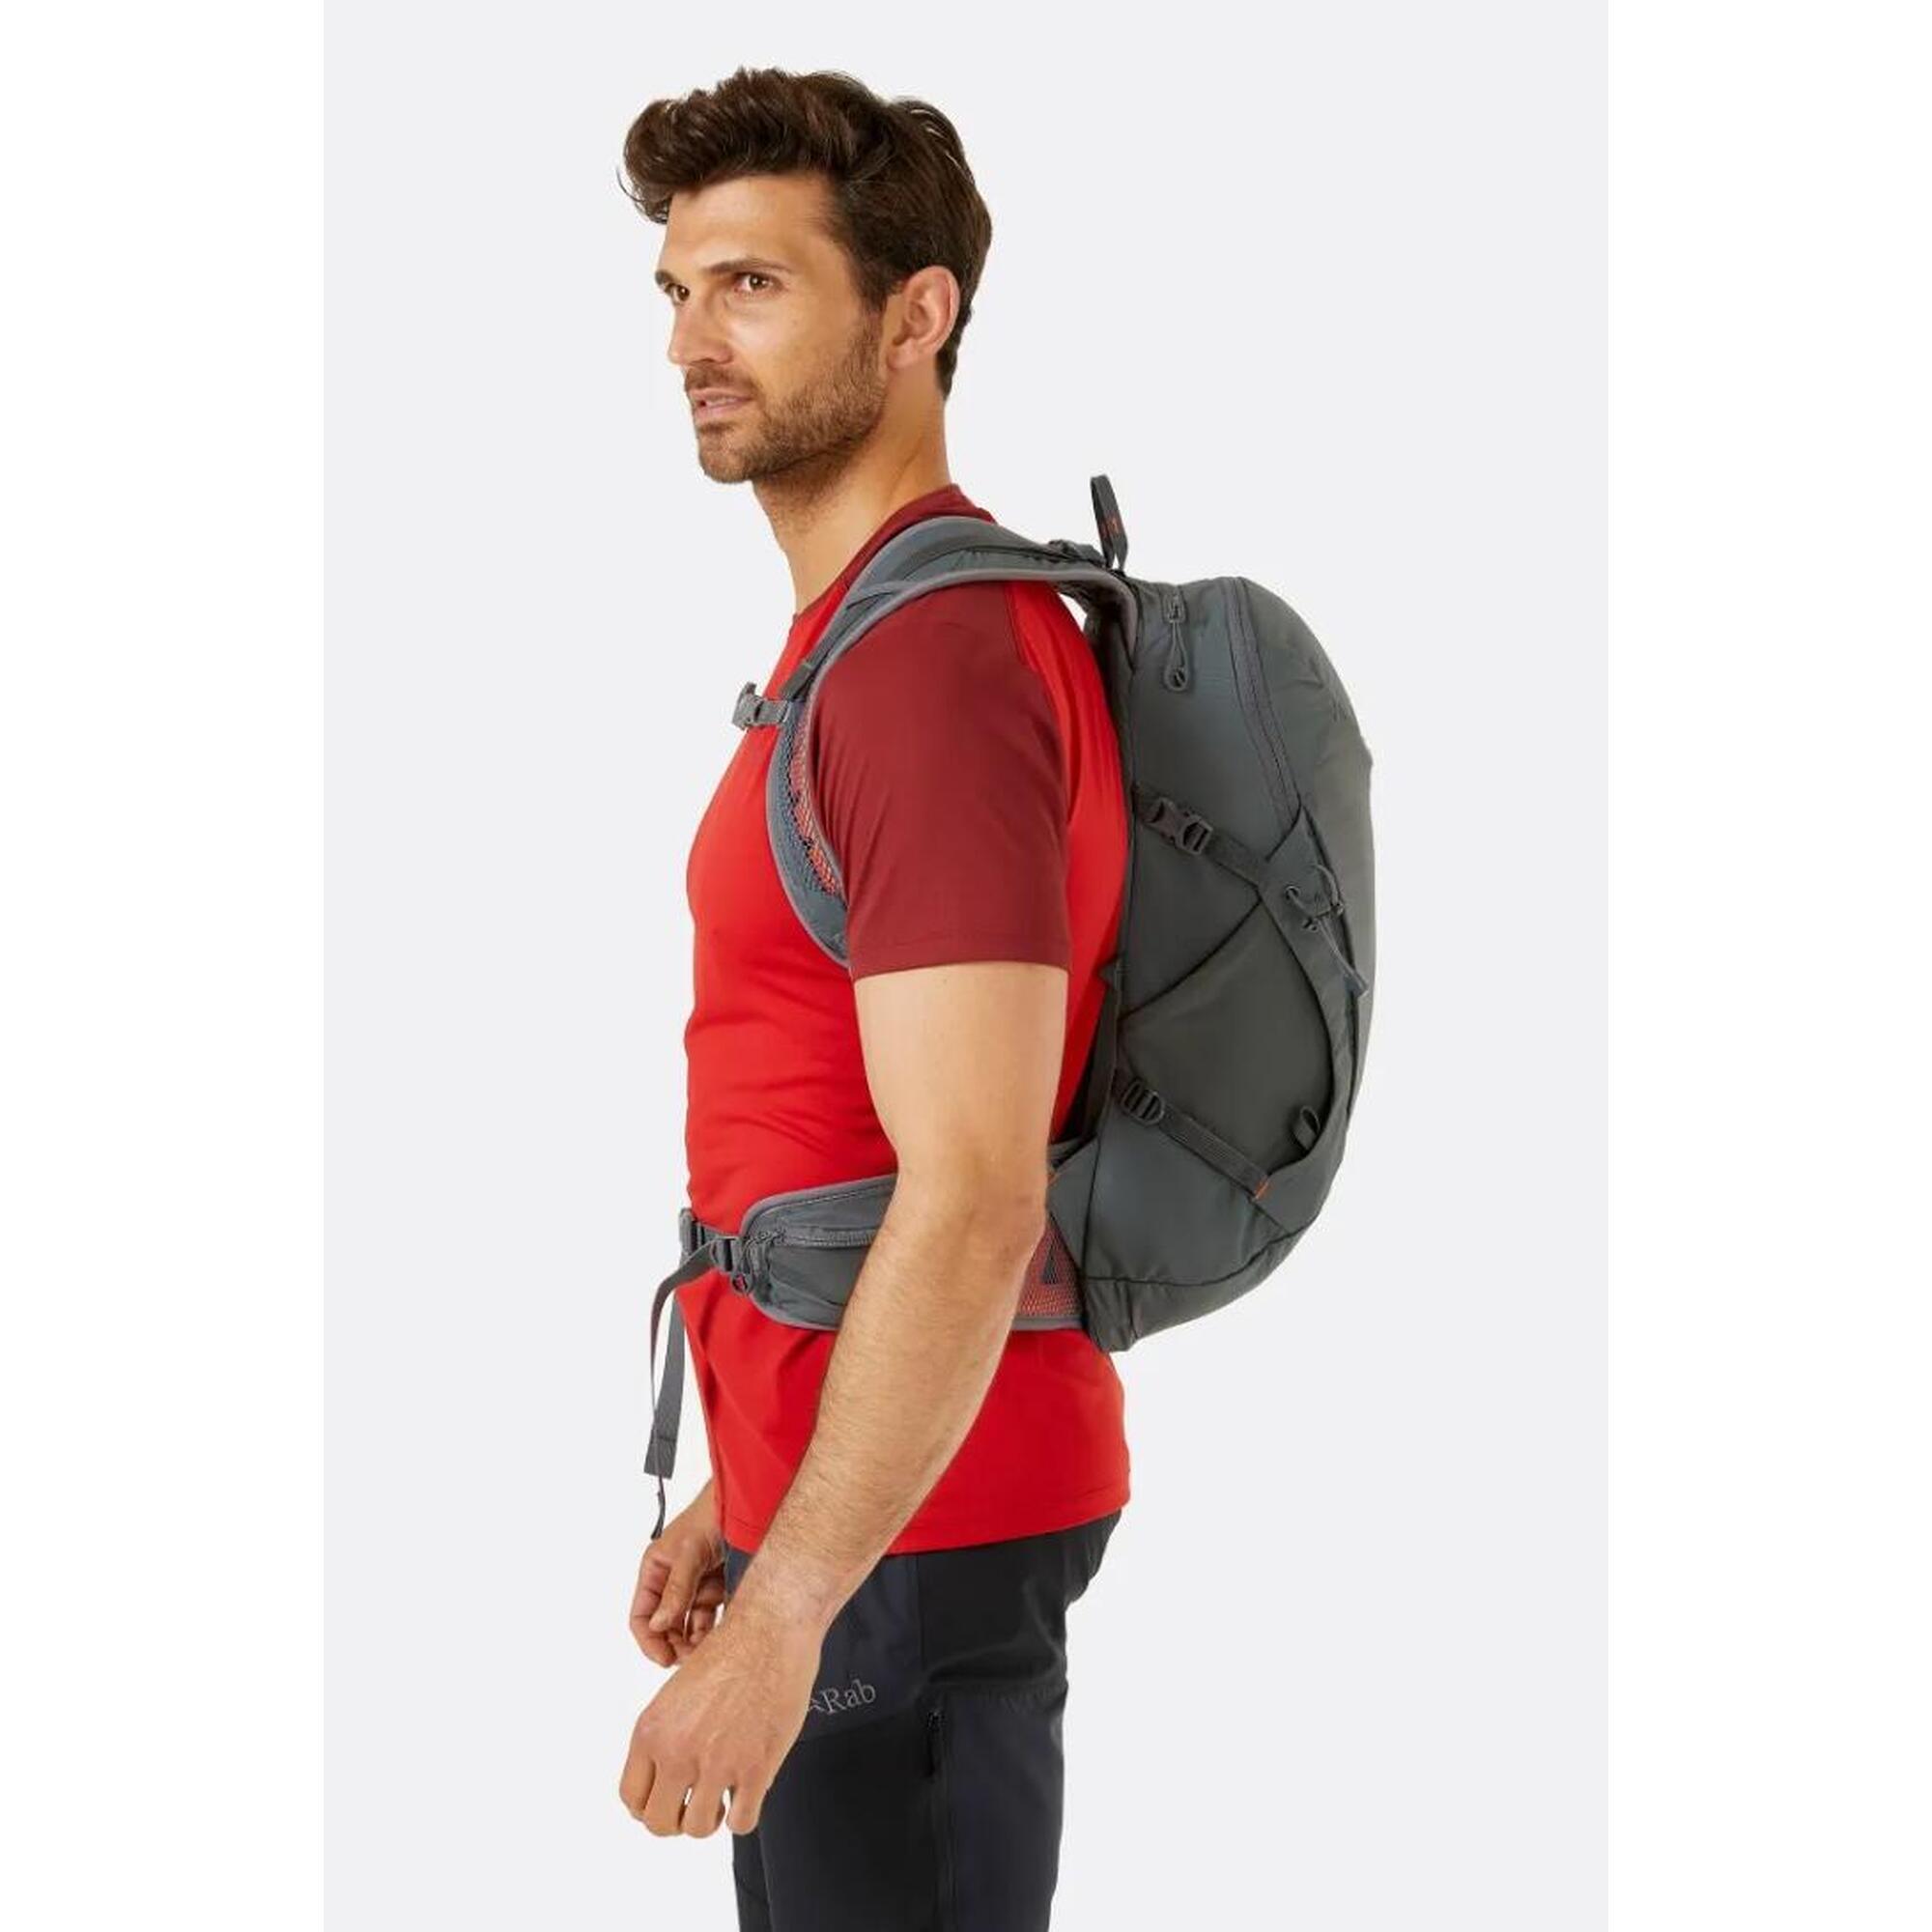 Aeon Hiking Backpack 27L - Blue